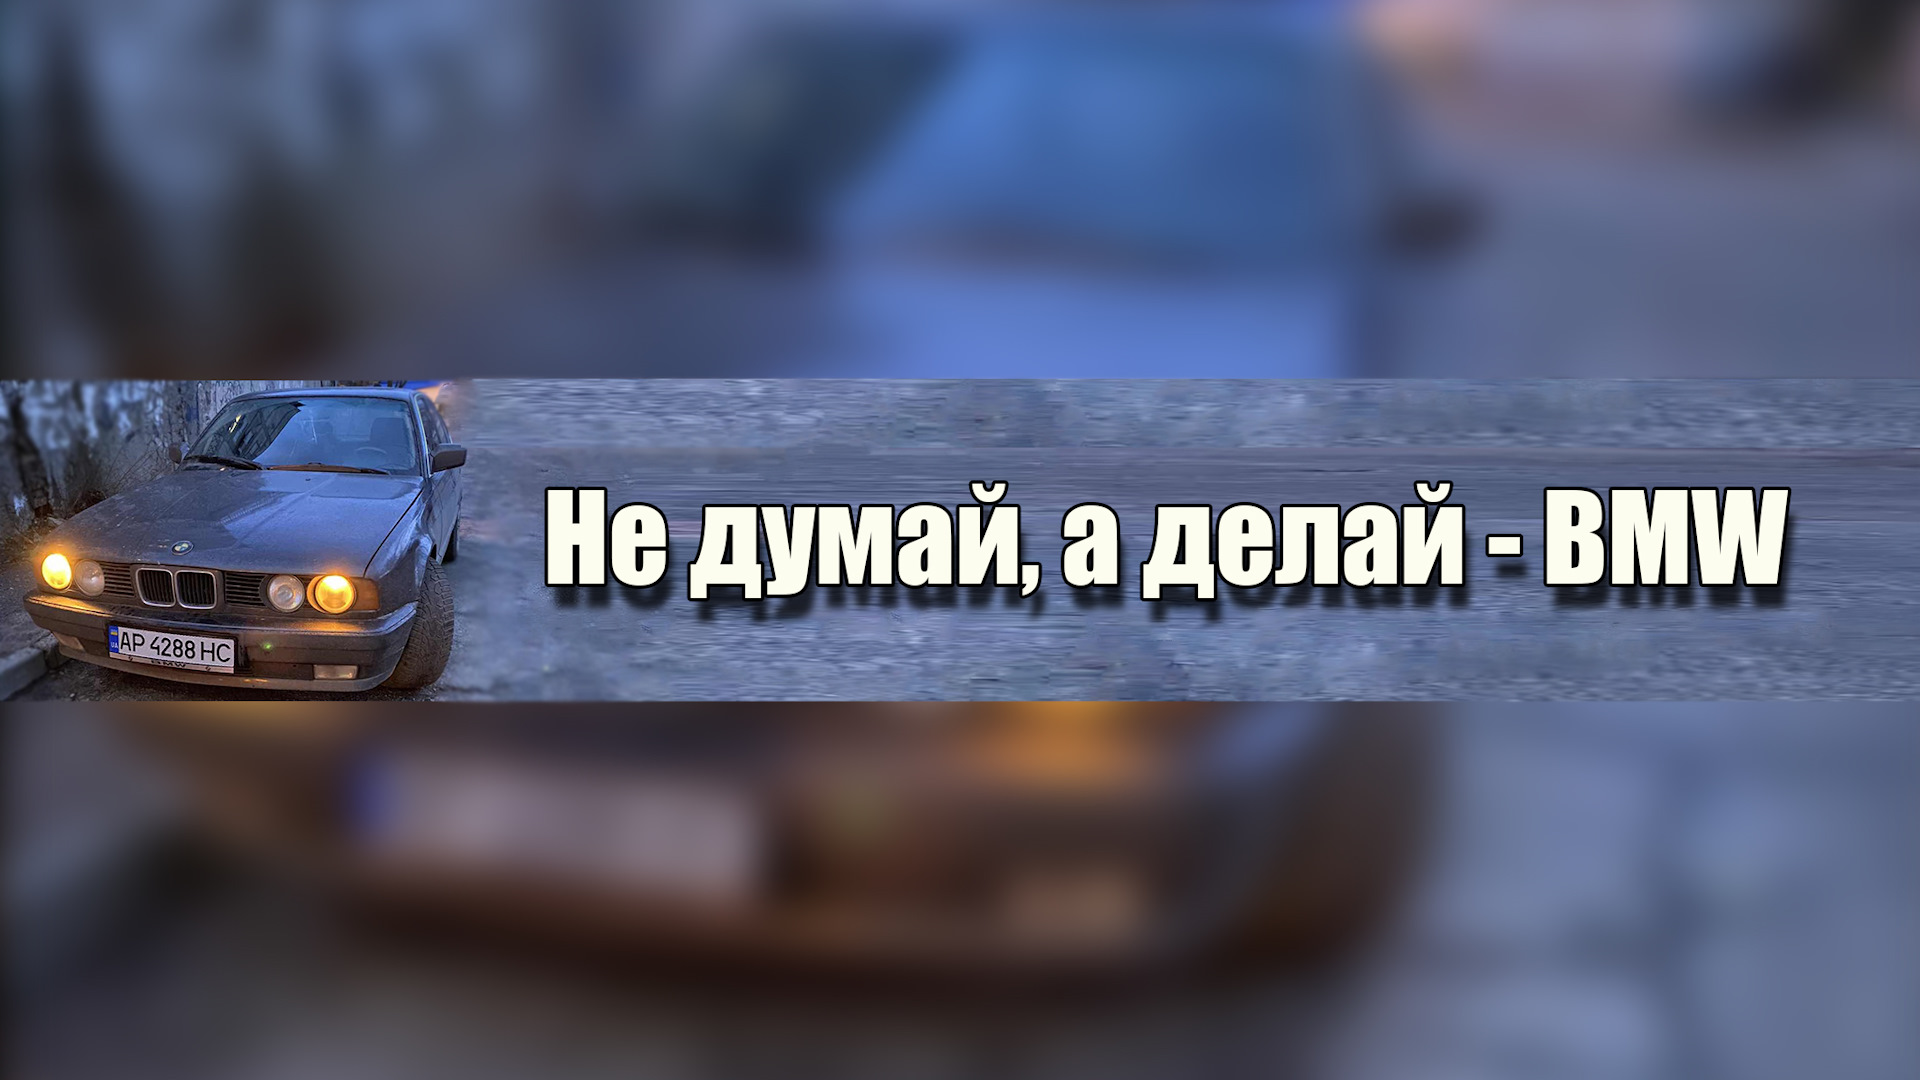 Канал про автомобили. БМВ сделана в России.